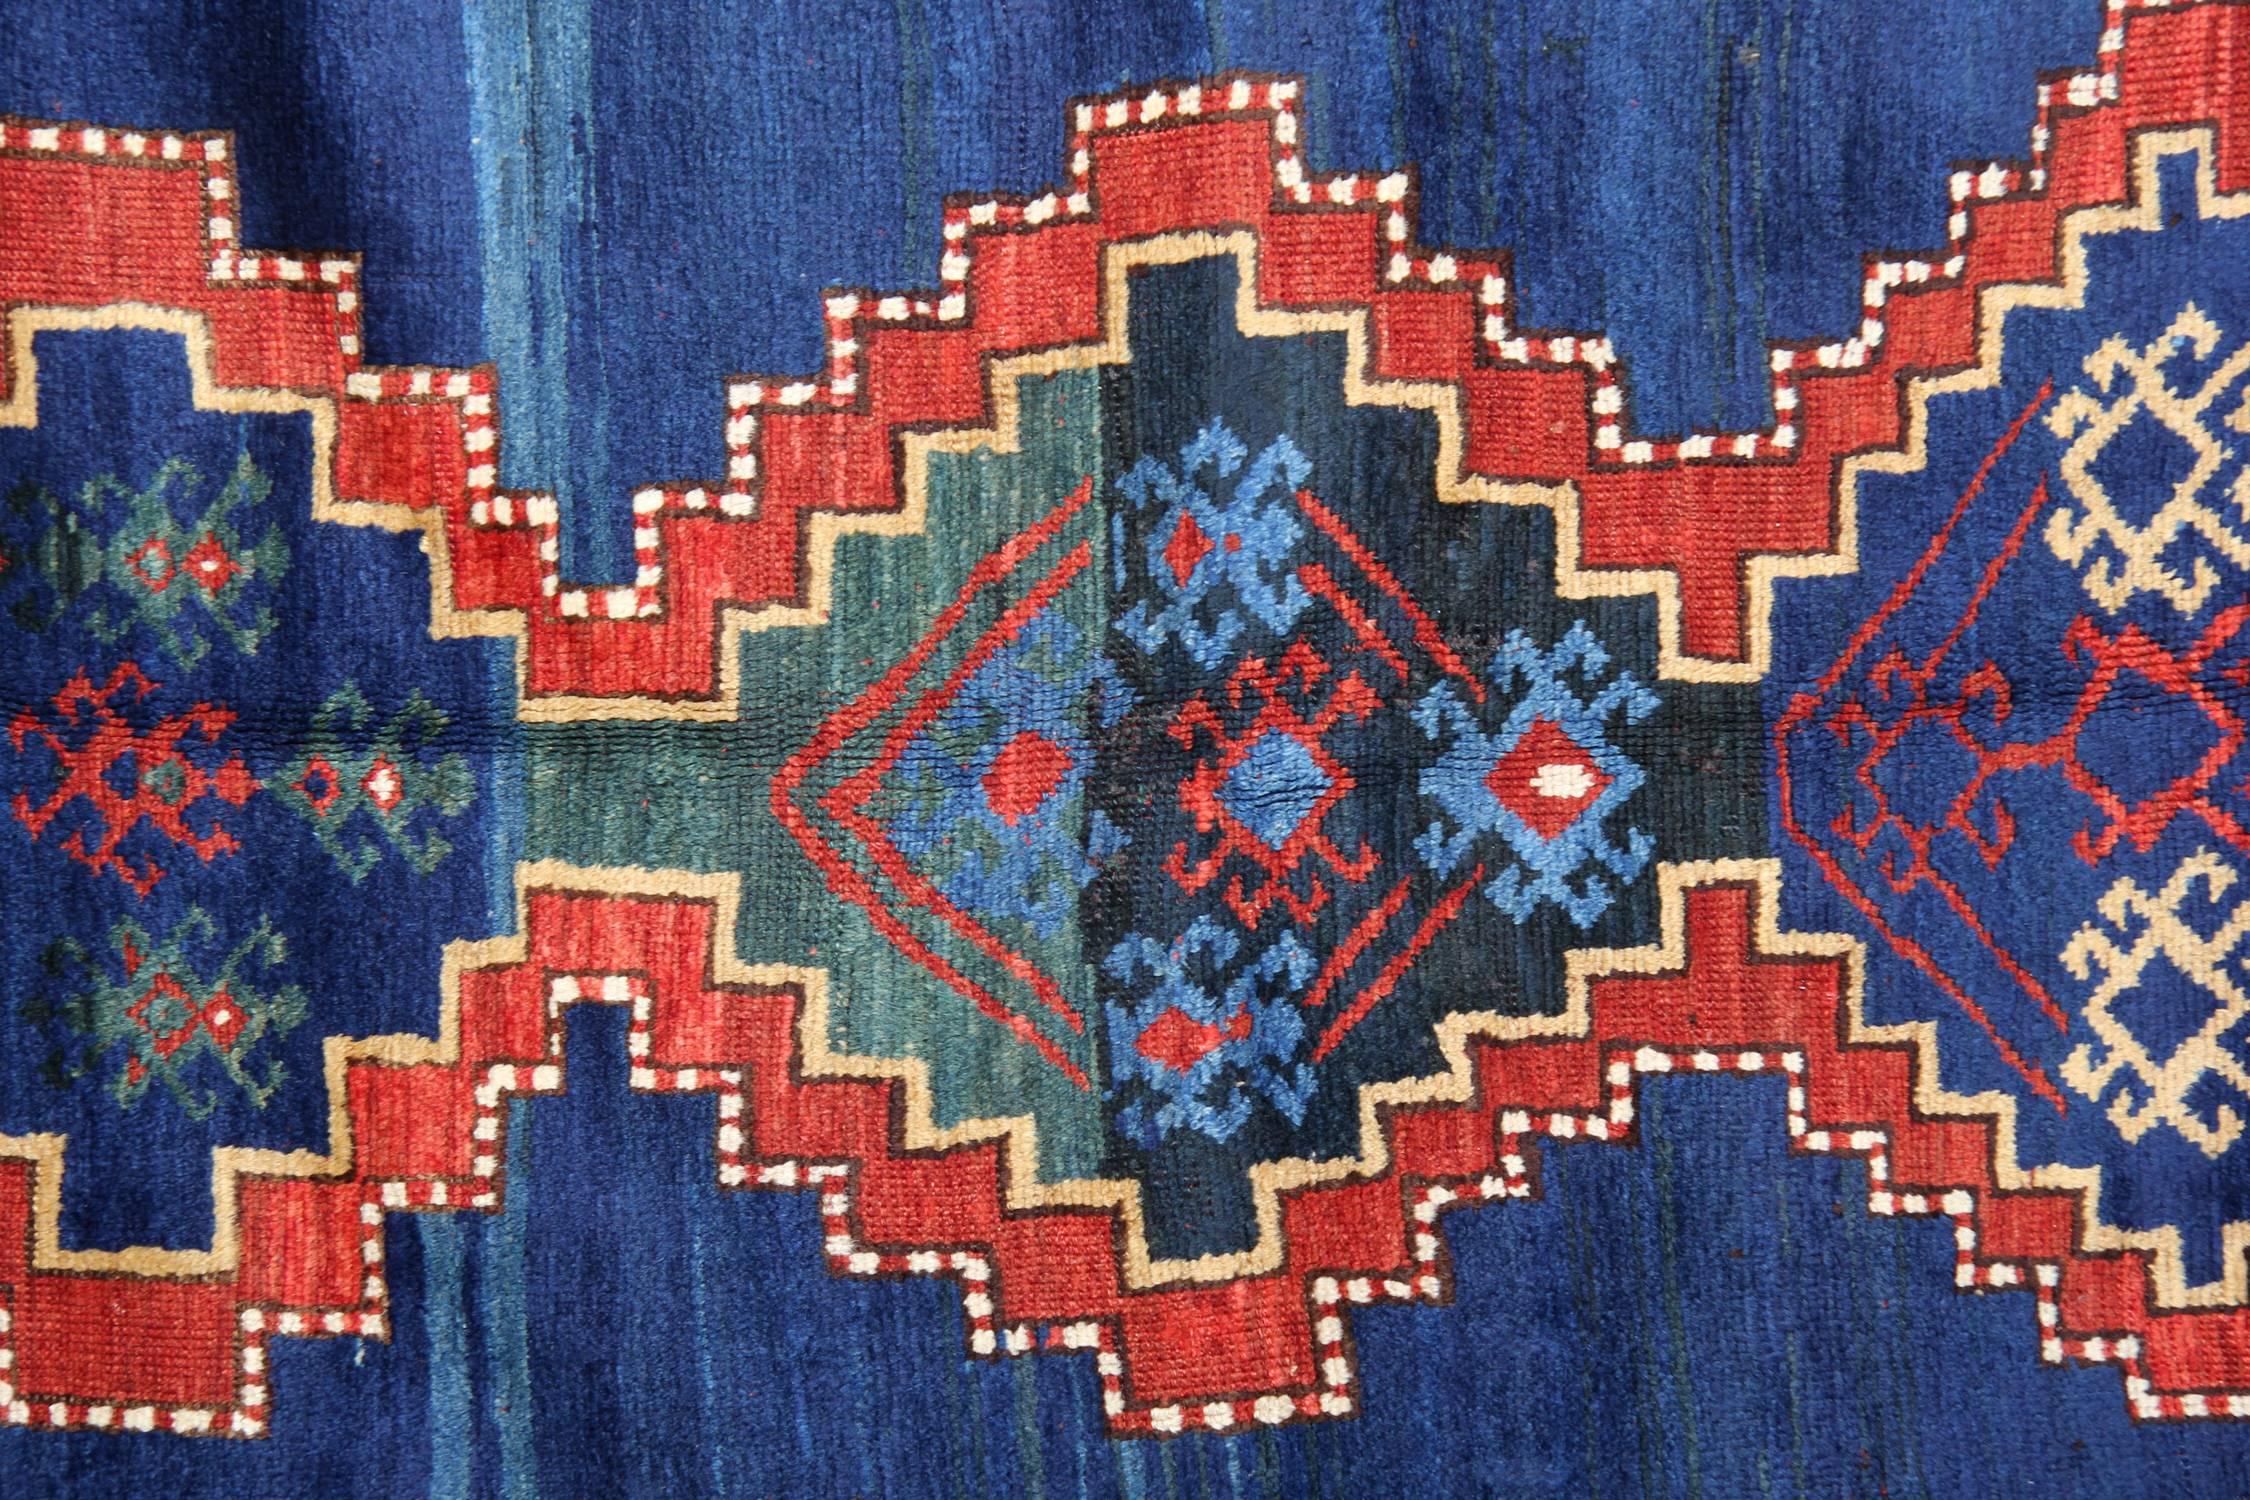 Die kasachischen Teppiche wurden hauptsächlich in den Dörfern und nicht in den Städten hergestellt. Die Teppiche aus dem Kaukasus werden aus Materialien hergestellt, die den einzelnen Stammesprovinzen eigen sind, und weisen typischerweise kühne